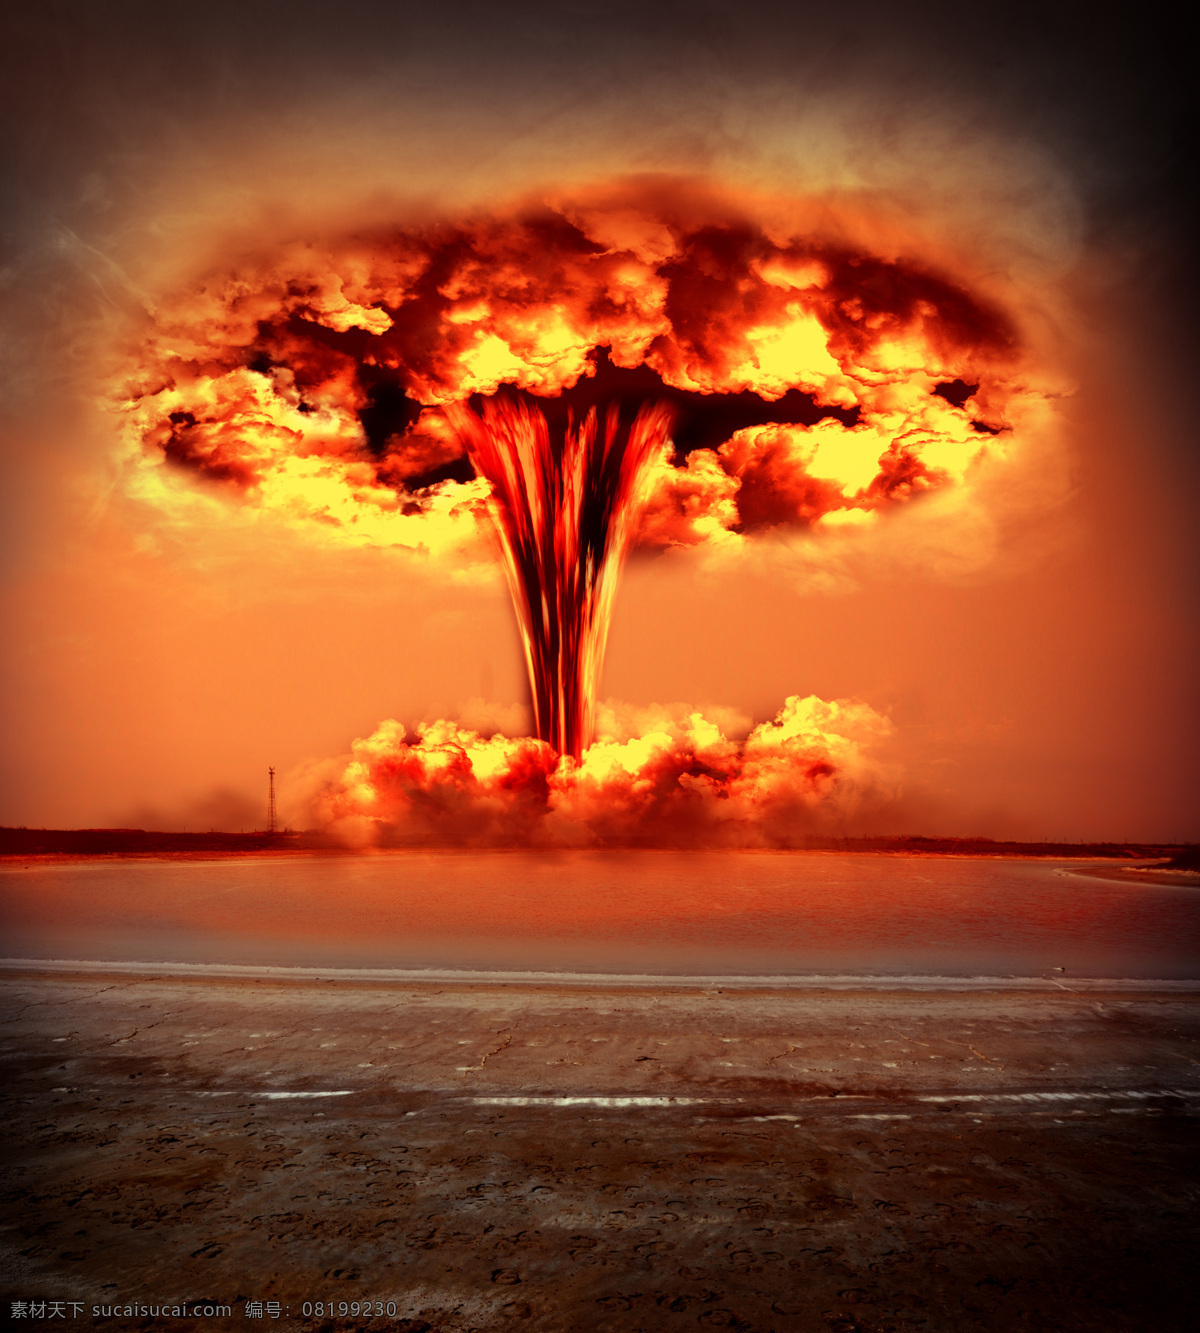 核爆炸 核弹 爆炸 特效 烟雾 硝烟 氢弹 原子弹 燃烧 炸弹 爆破 浓烟 火焰 军事武器 现代科技